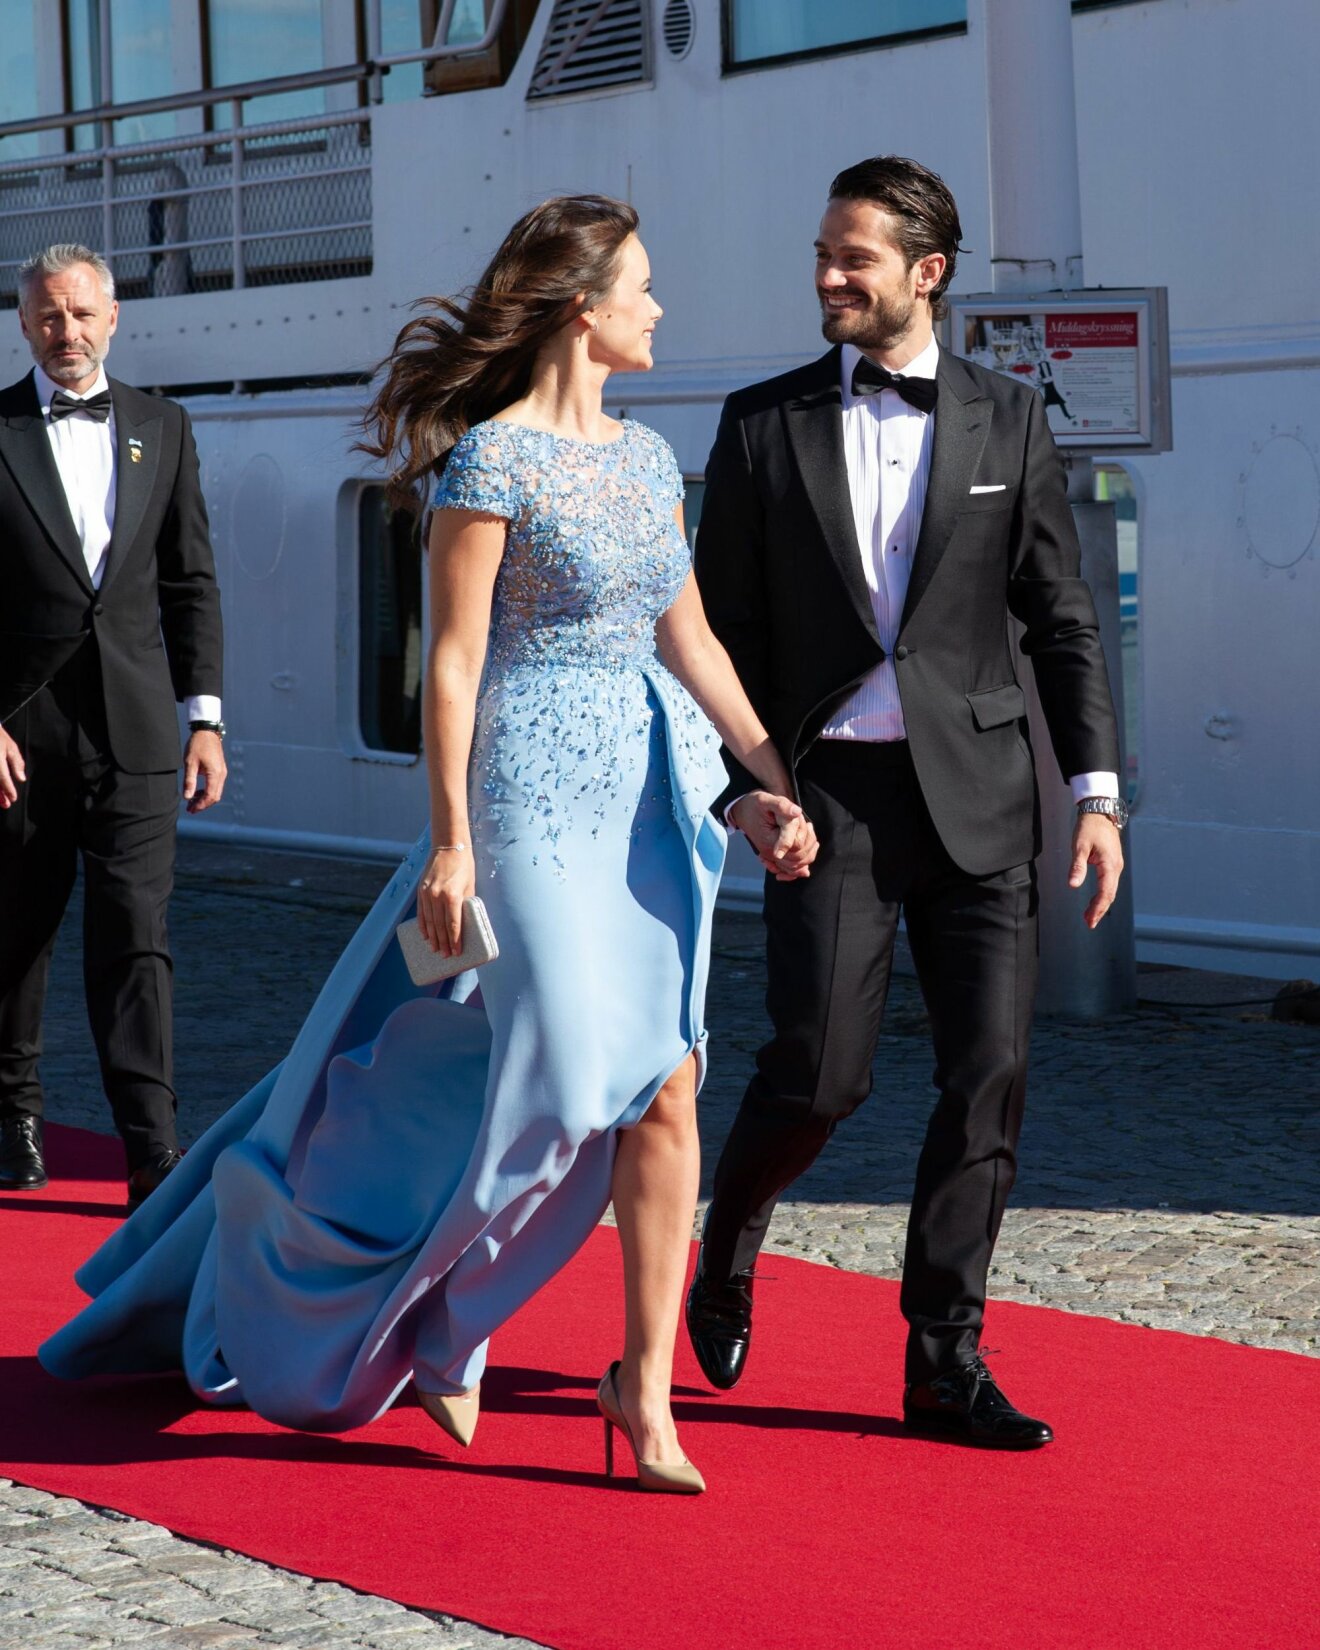 Prinsessan Sofia i en blå klänning med glitterdetaljer. På väg till festen dagen innan prinsbröllopet 2015